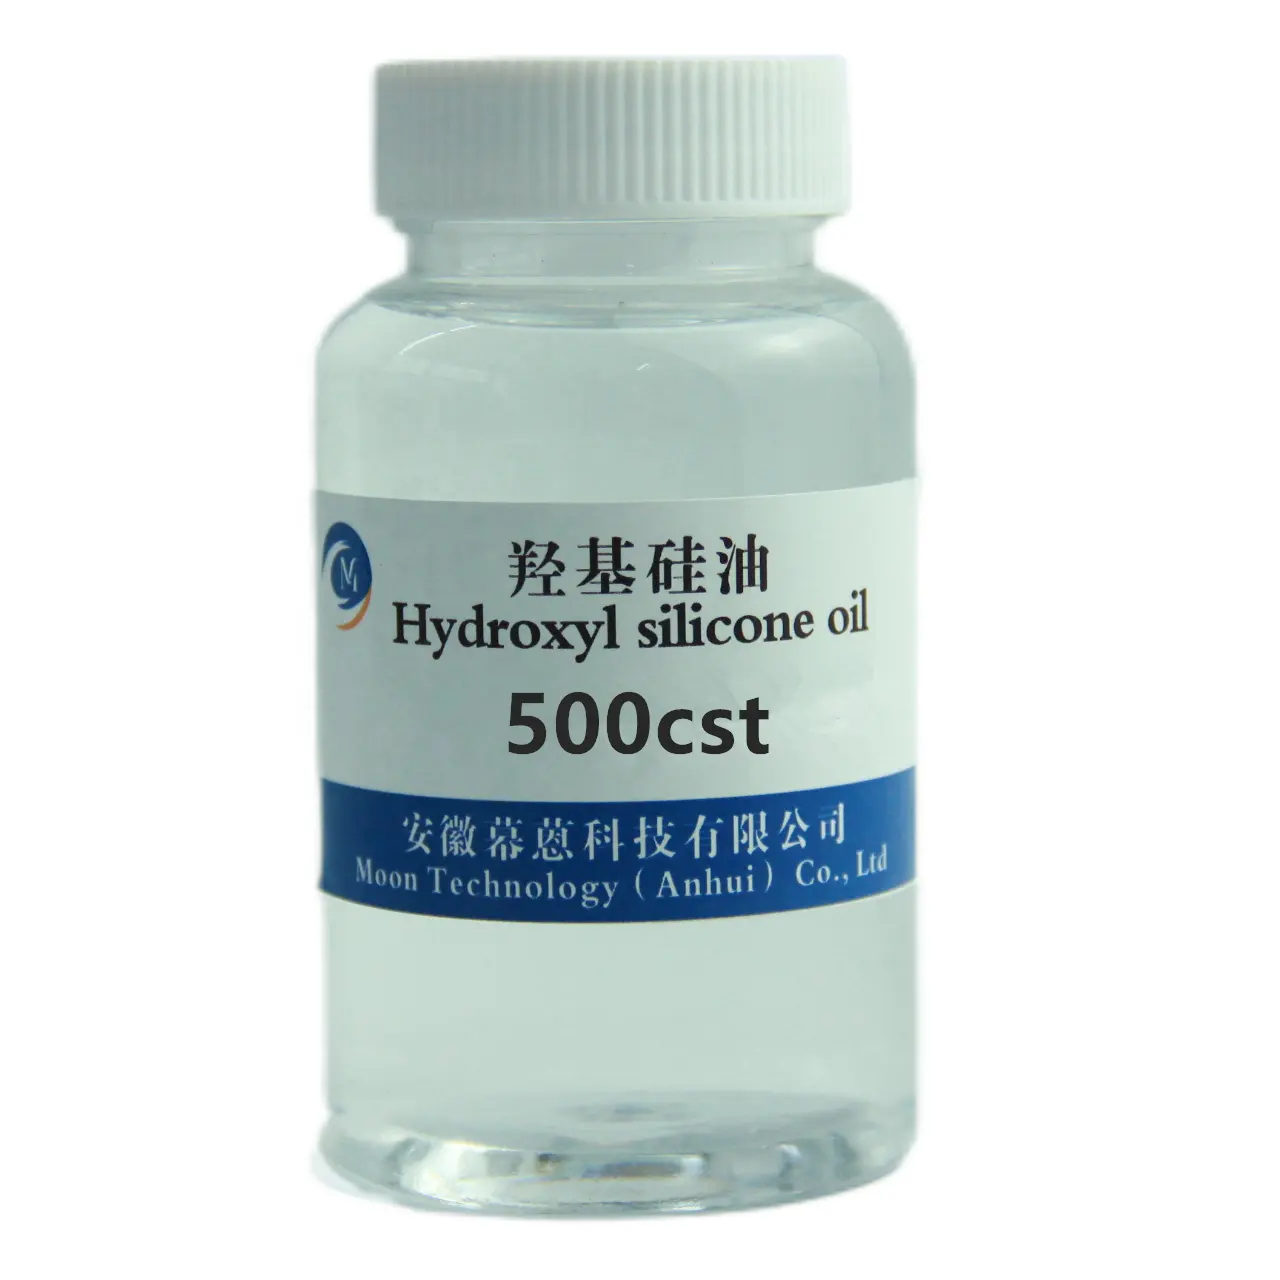 107 силикон со средней вязкостью, CAS 70131-67-8, гидроксисиликоновое масло/полидиметилсилоксан, используемый в качестве антиадгезивного агента